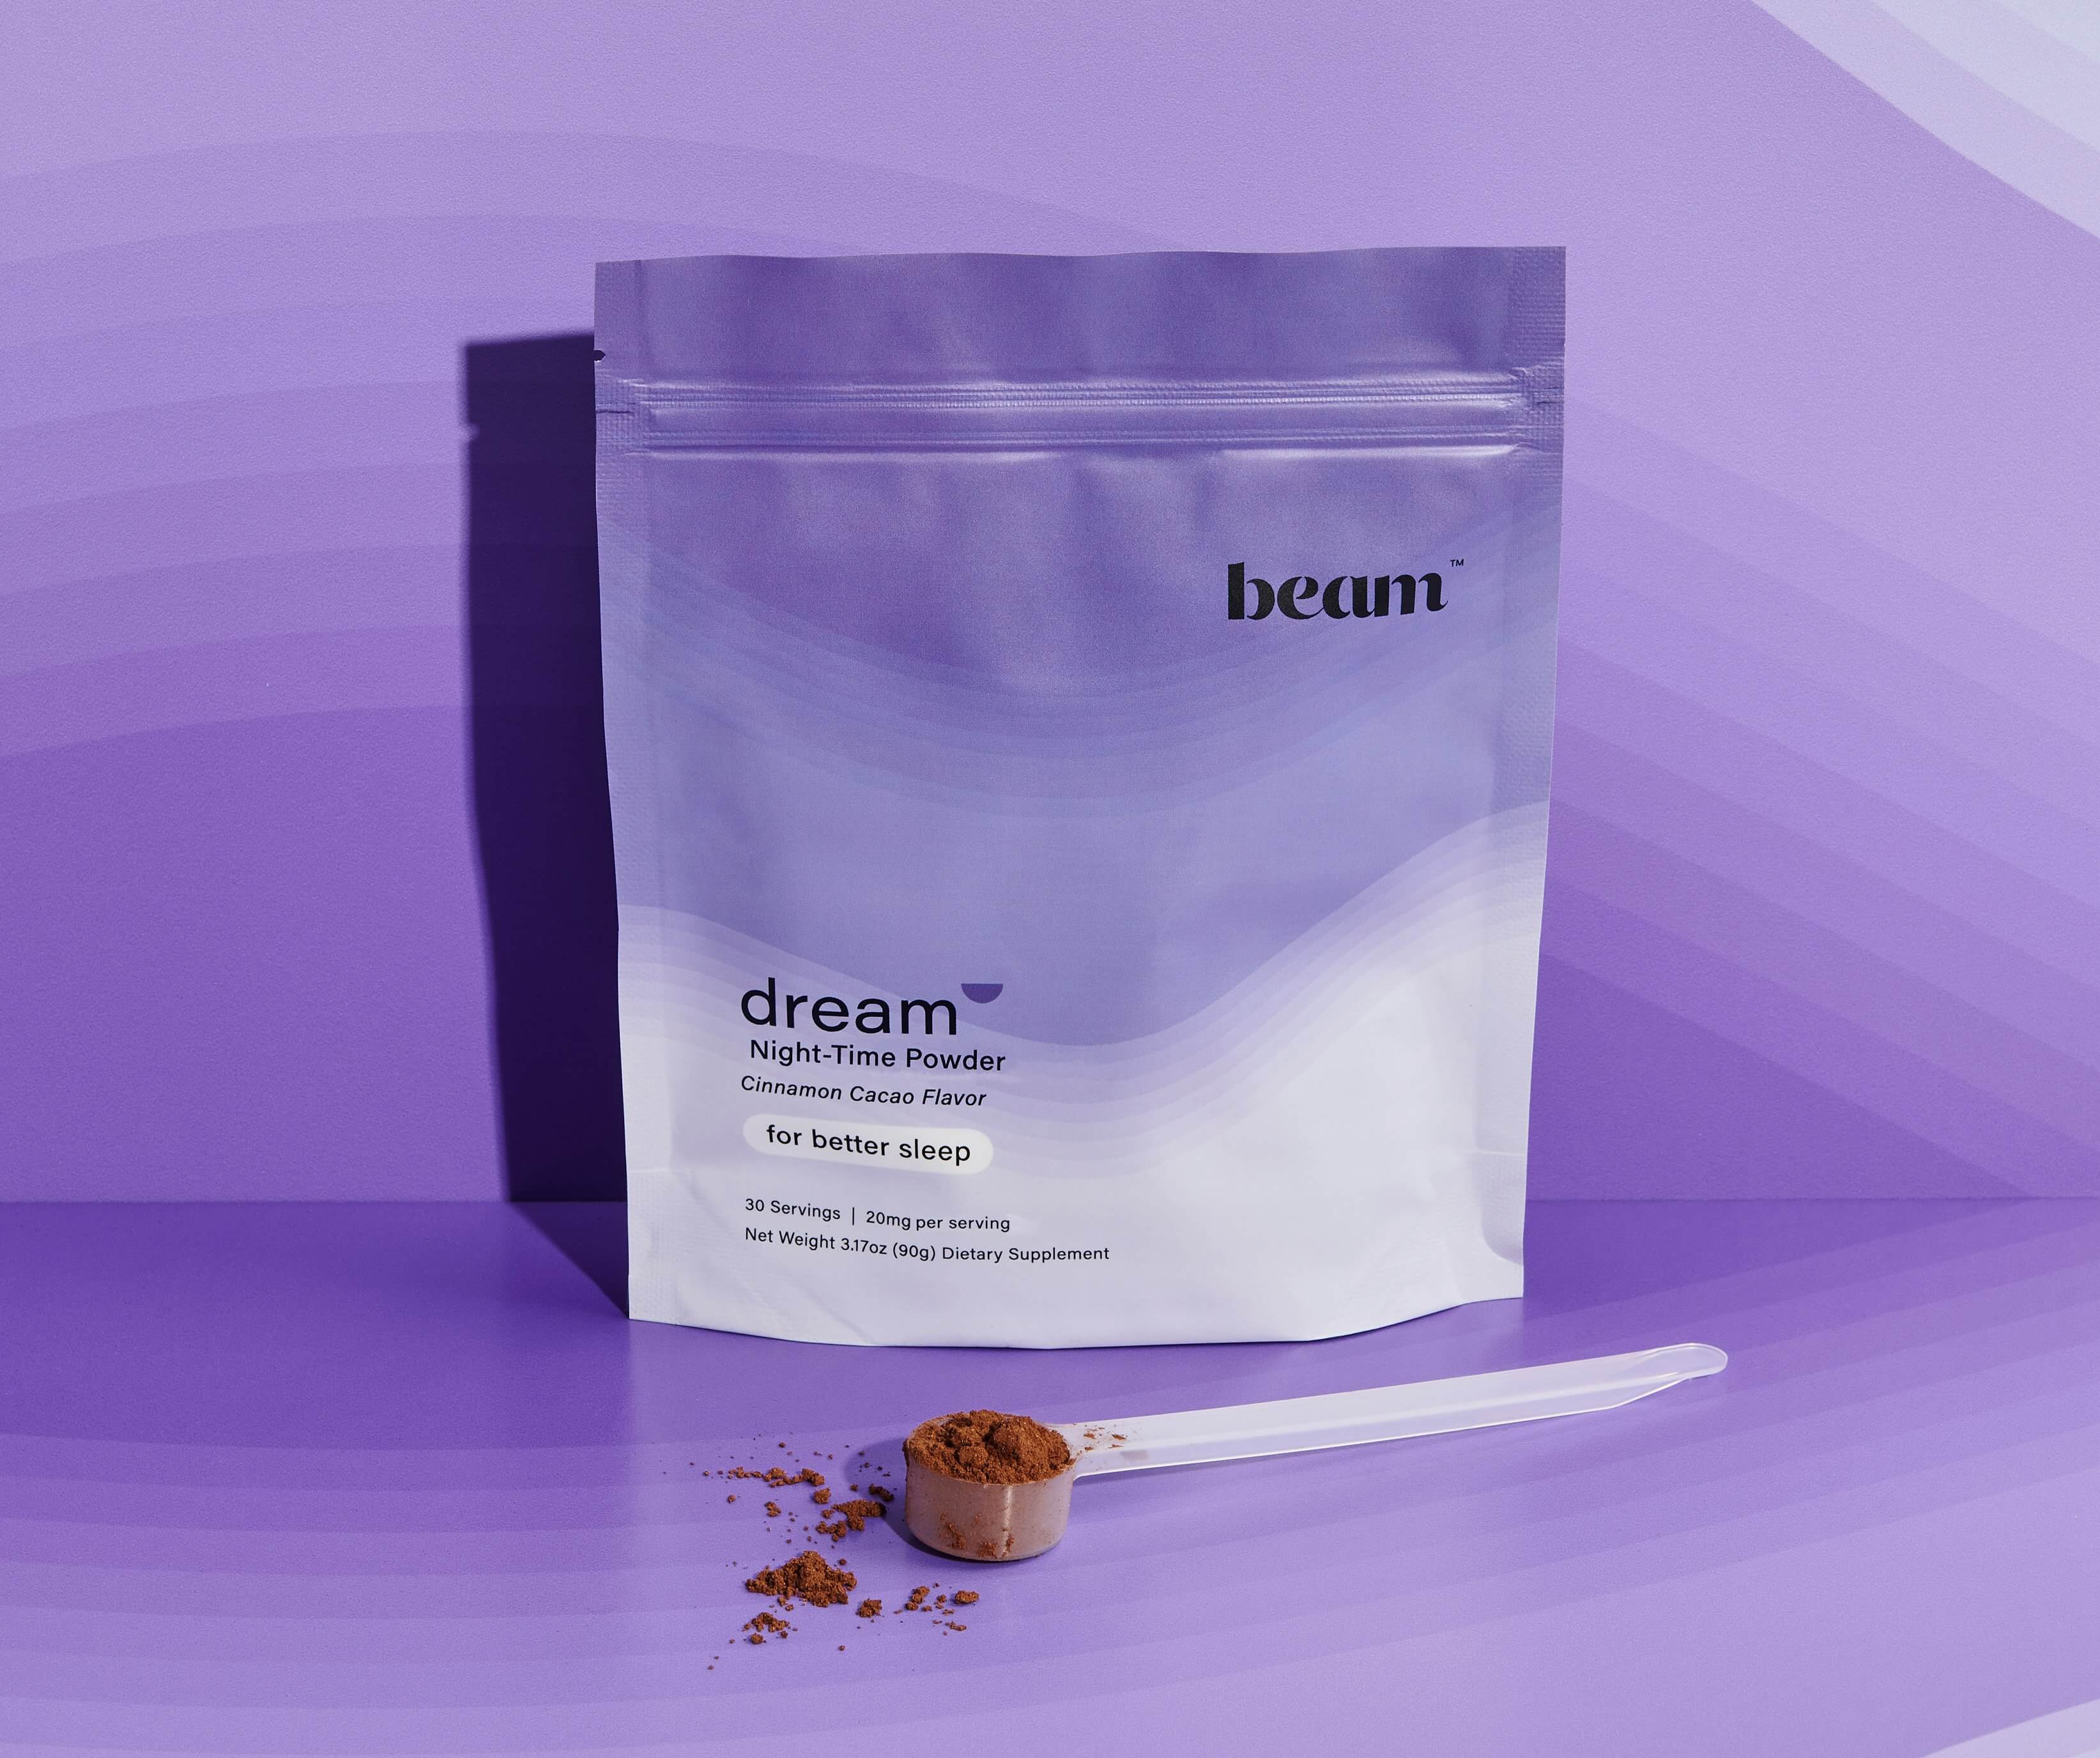 Dream Powder — save 25%, 2-month supply